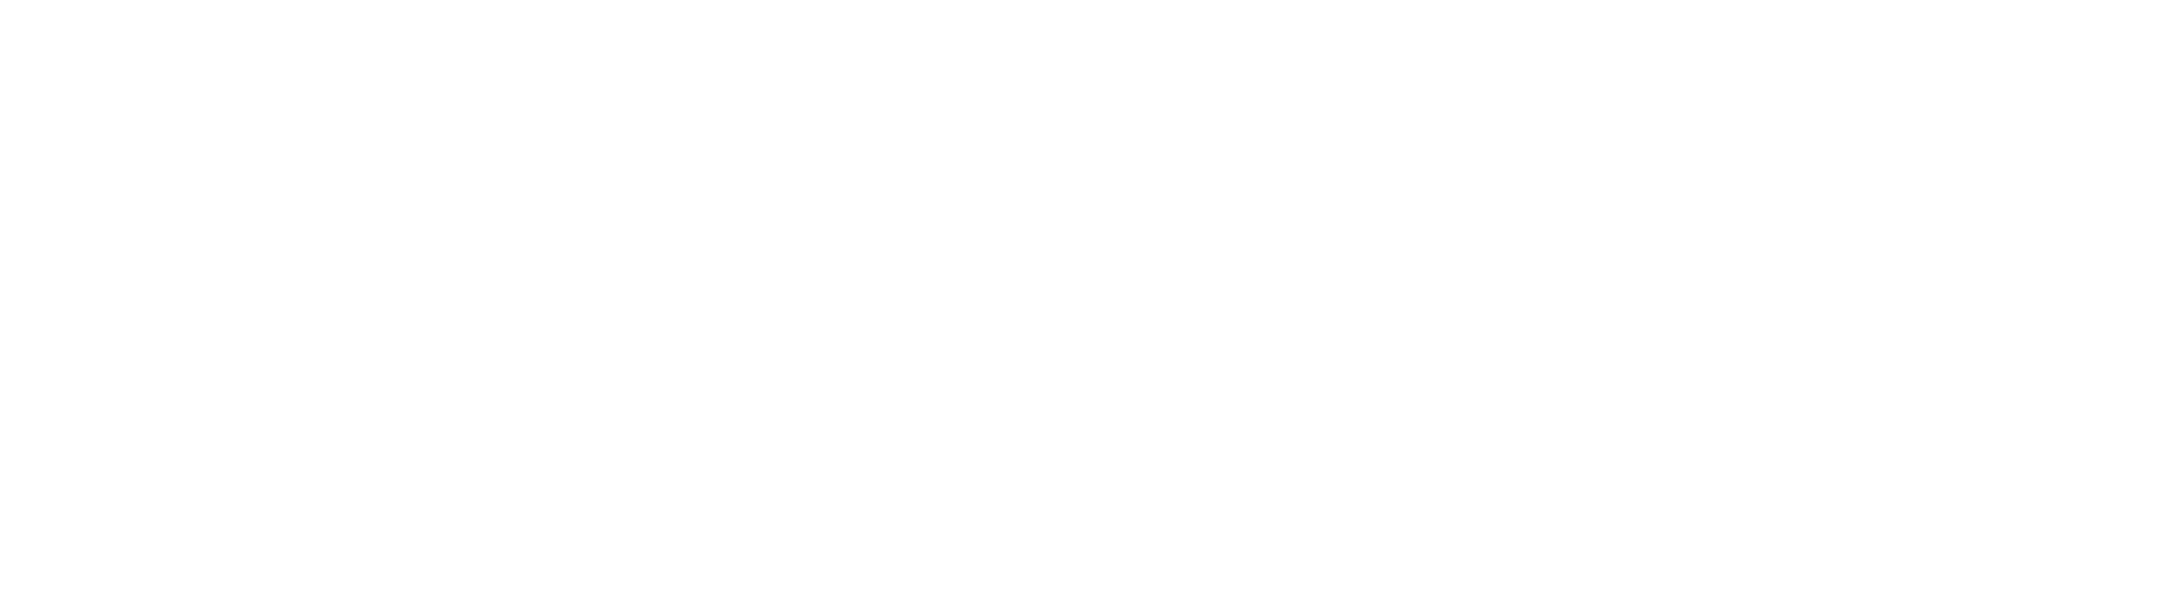 Grass Roots Rx